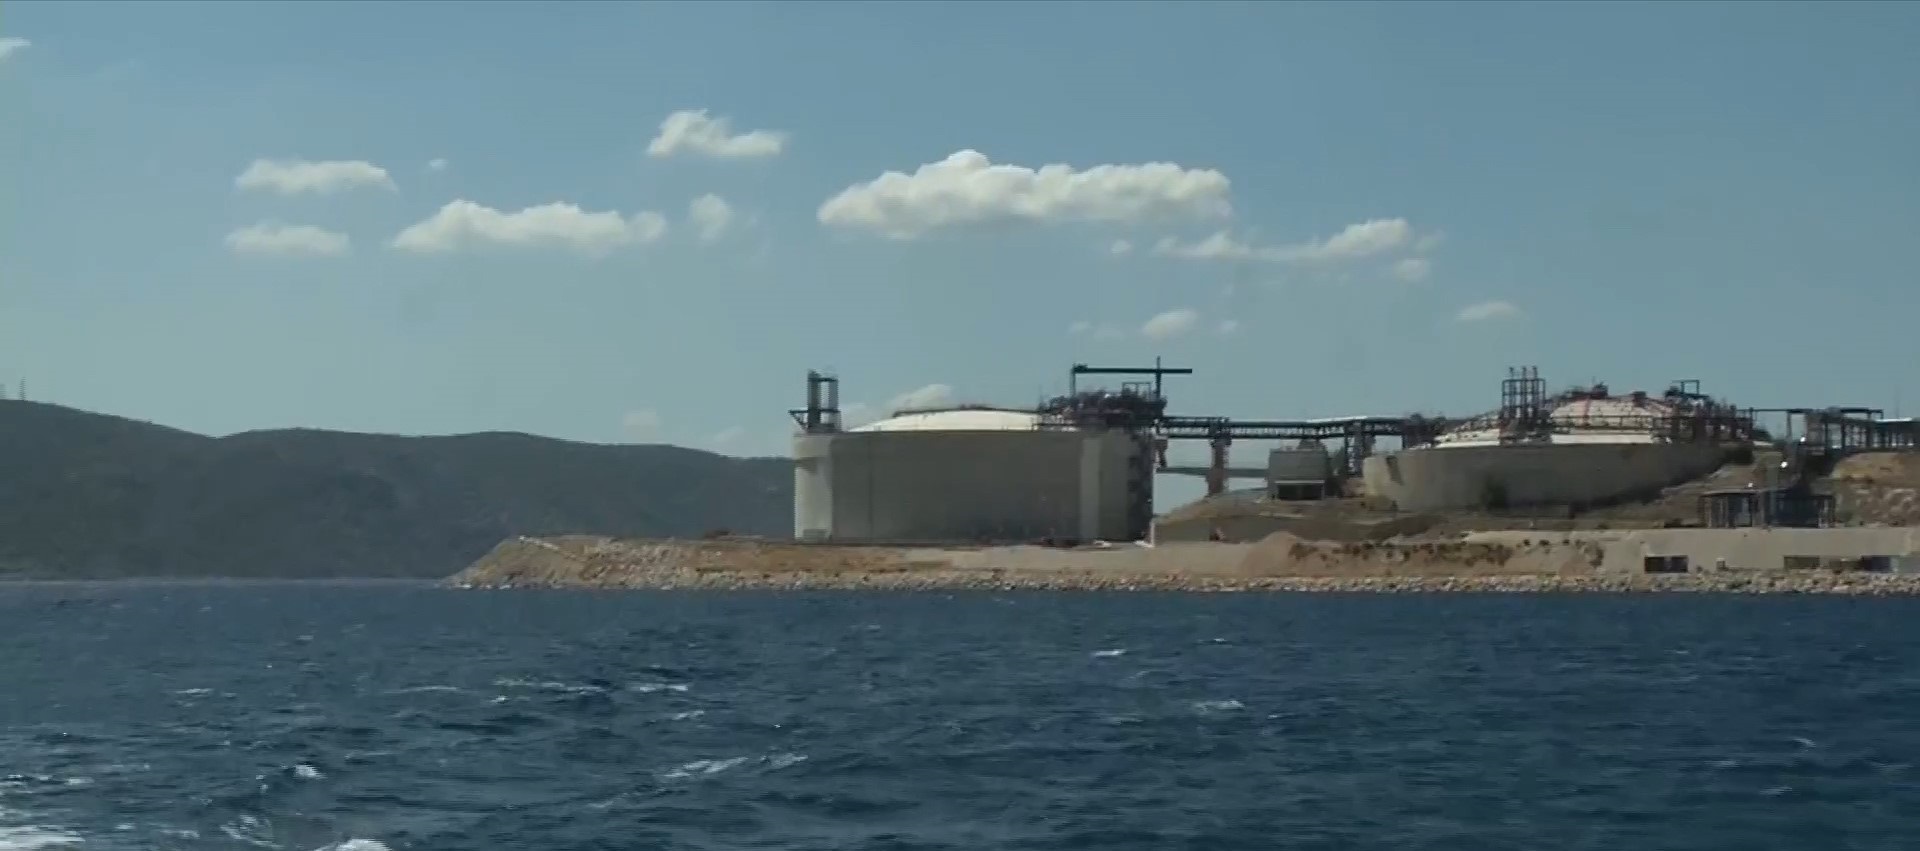 Έτοιμη για παραλαβές η νέα πλωτή δεξαμενή LNG στη Ρεβυθούσα – Σκρέκας: Θωρακίζουμε ενεργειακά τη χώρα